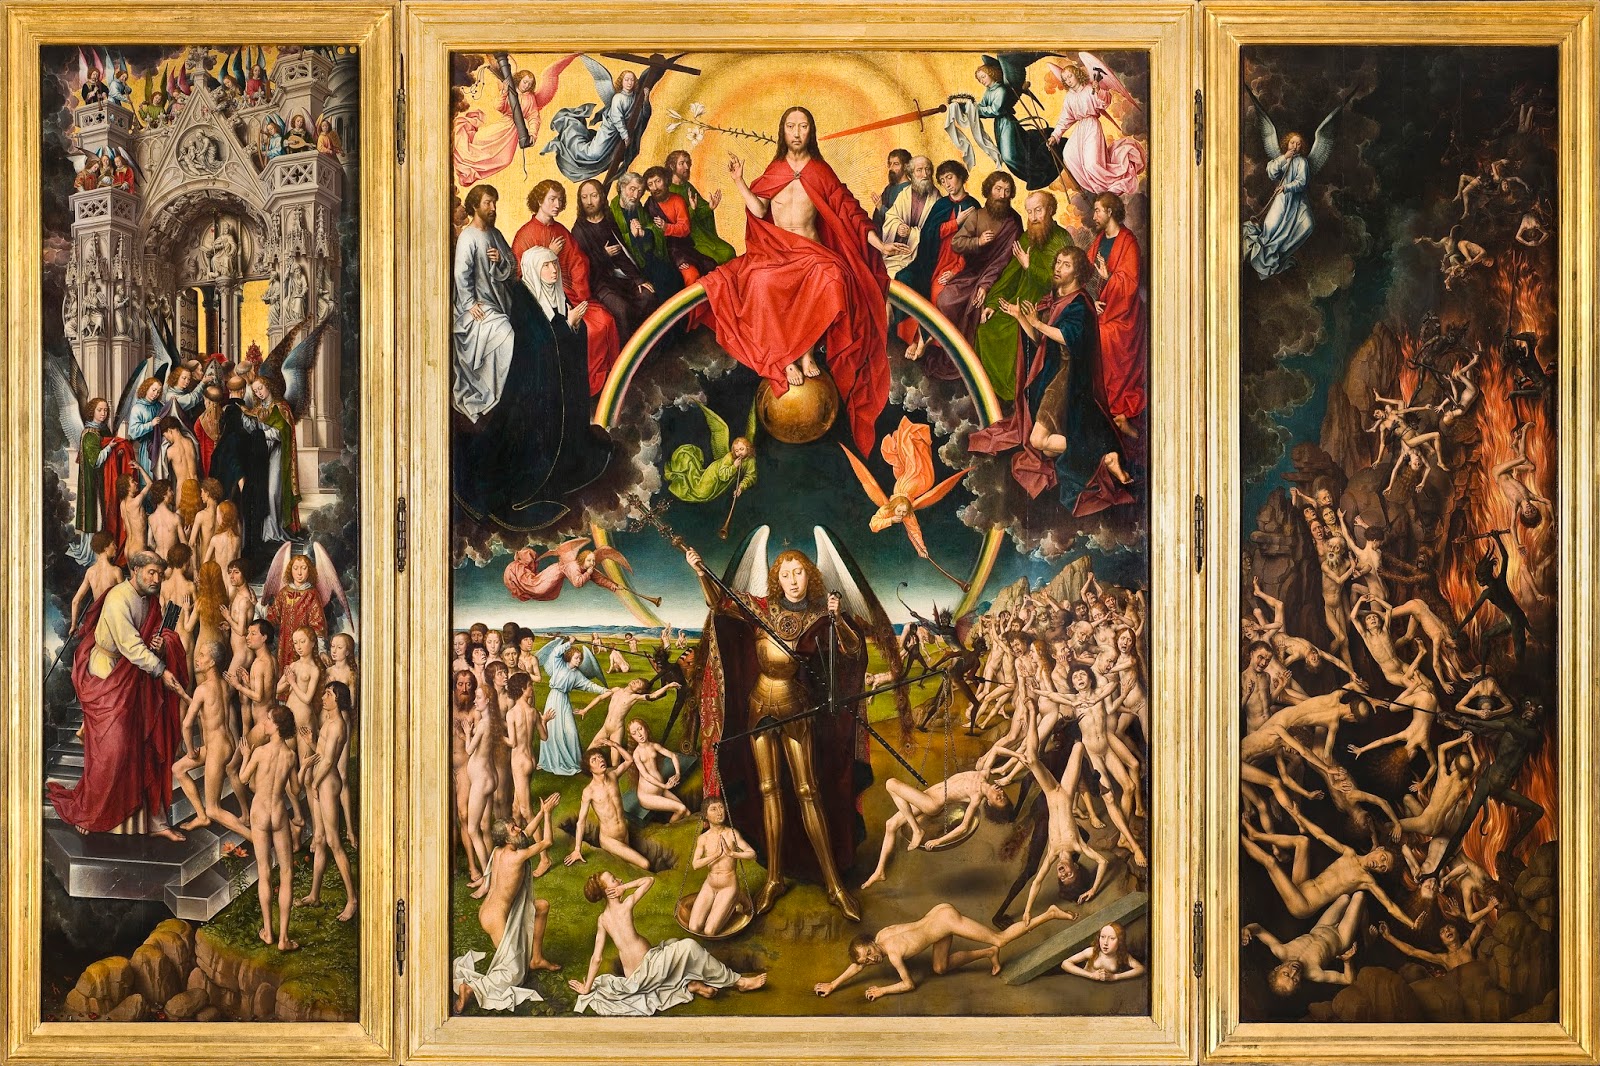 A Morte e as representações do Além na Doutrina para crianças (c.1275) de  Ramon Llull